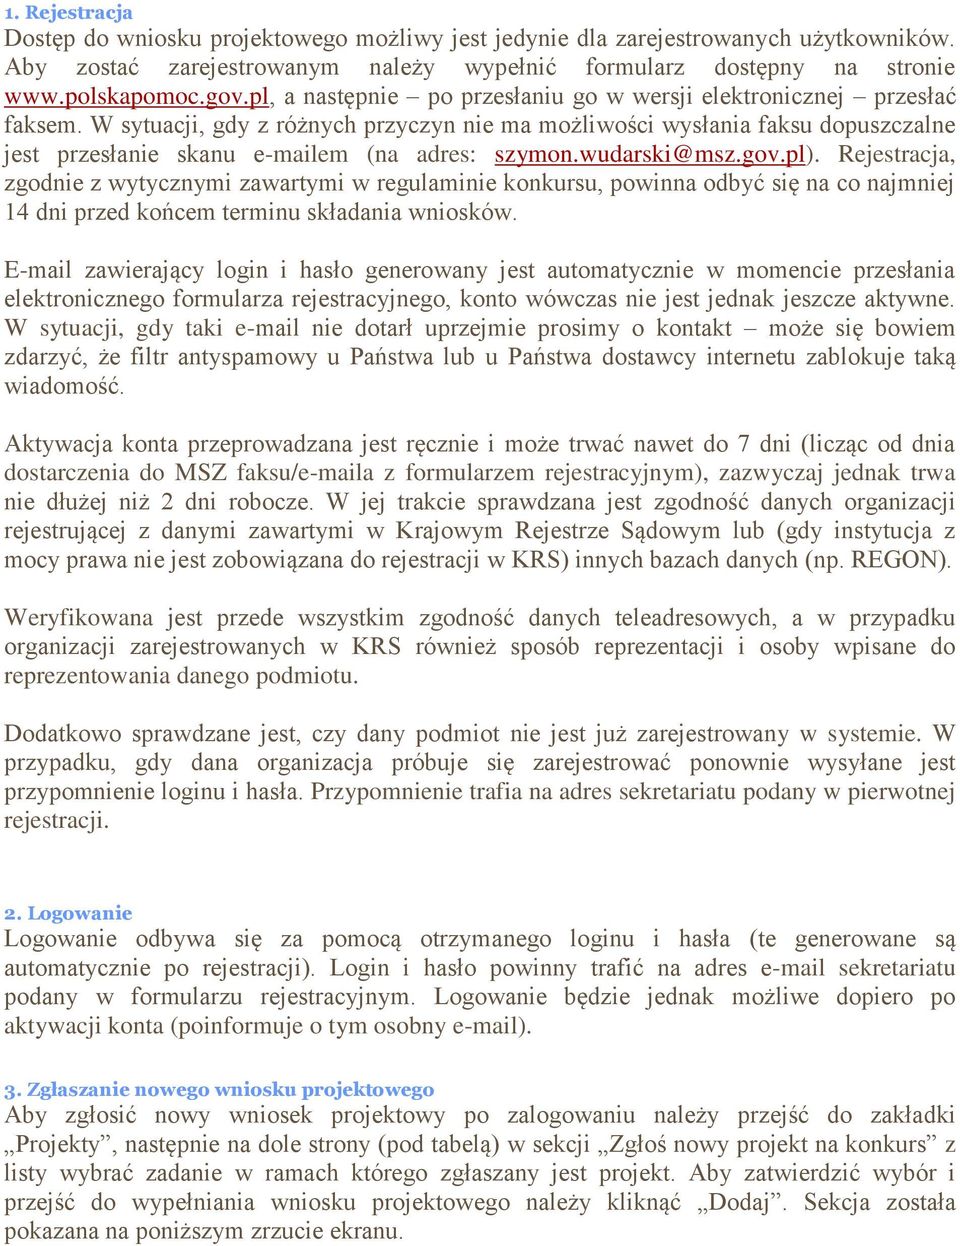 W sytuacji, gdy z różnych przyczyn nie ma możliwości wysłania faksu dopuszczalne jest przesłanie skanu e-mailem (na adres: szymon.wudarski@msz.gov.pl).